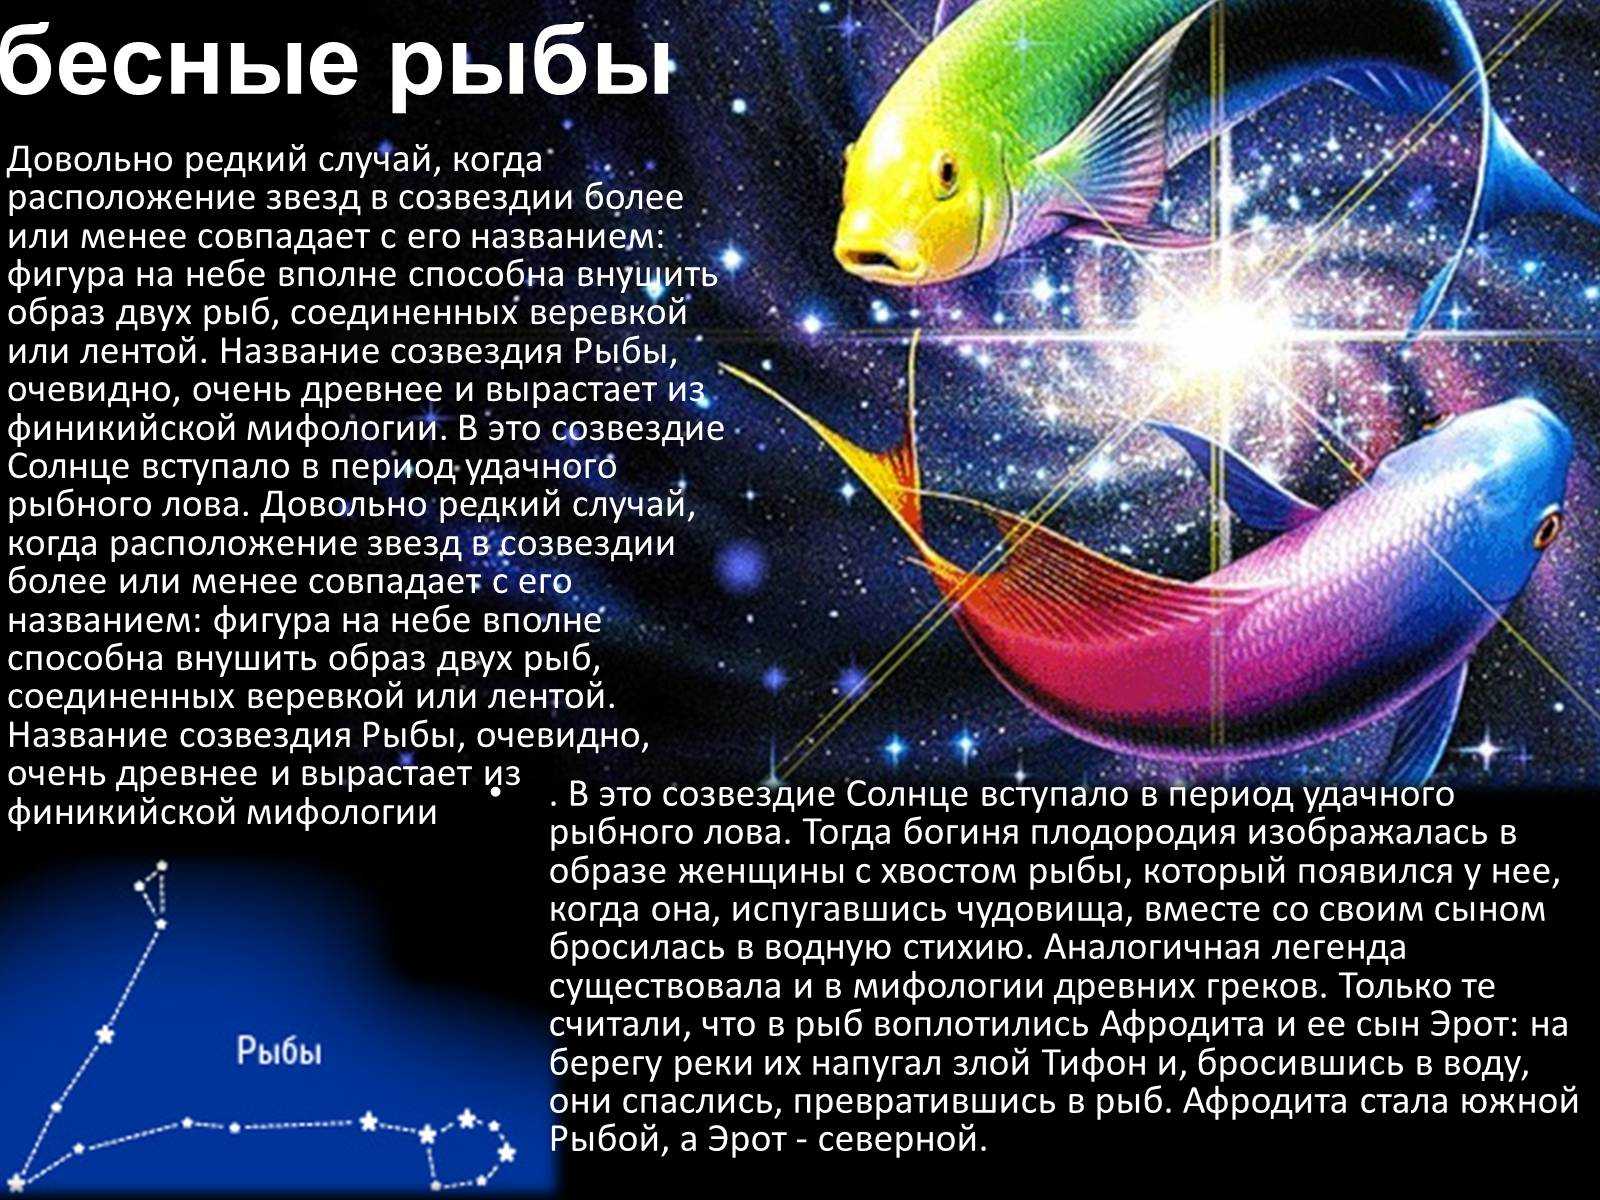 Зодиакальные созвездия: откуда они появились и зачем | научно популярный журнал sciencepop